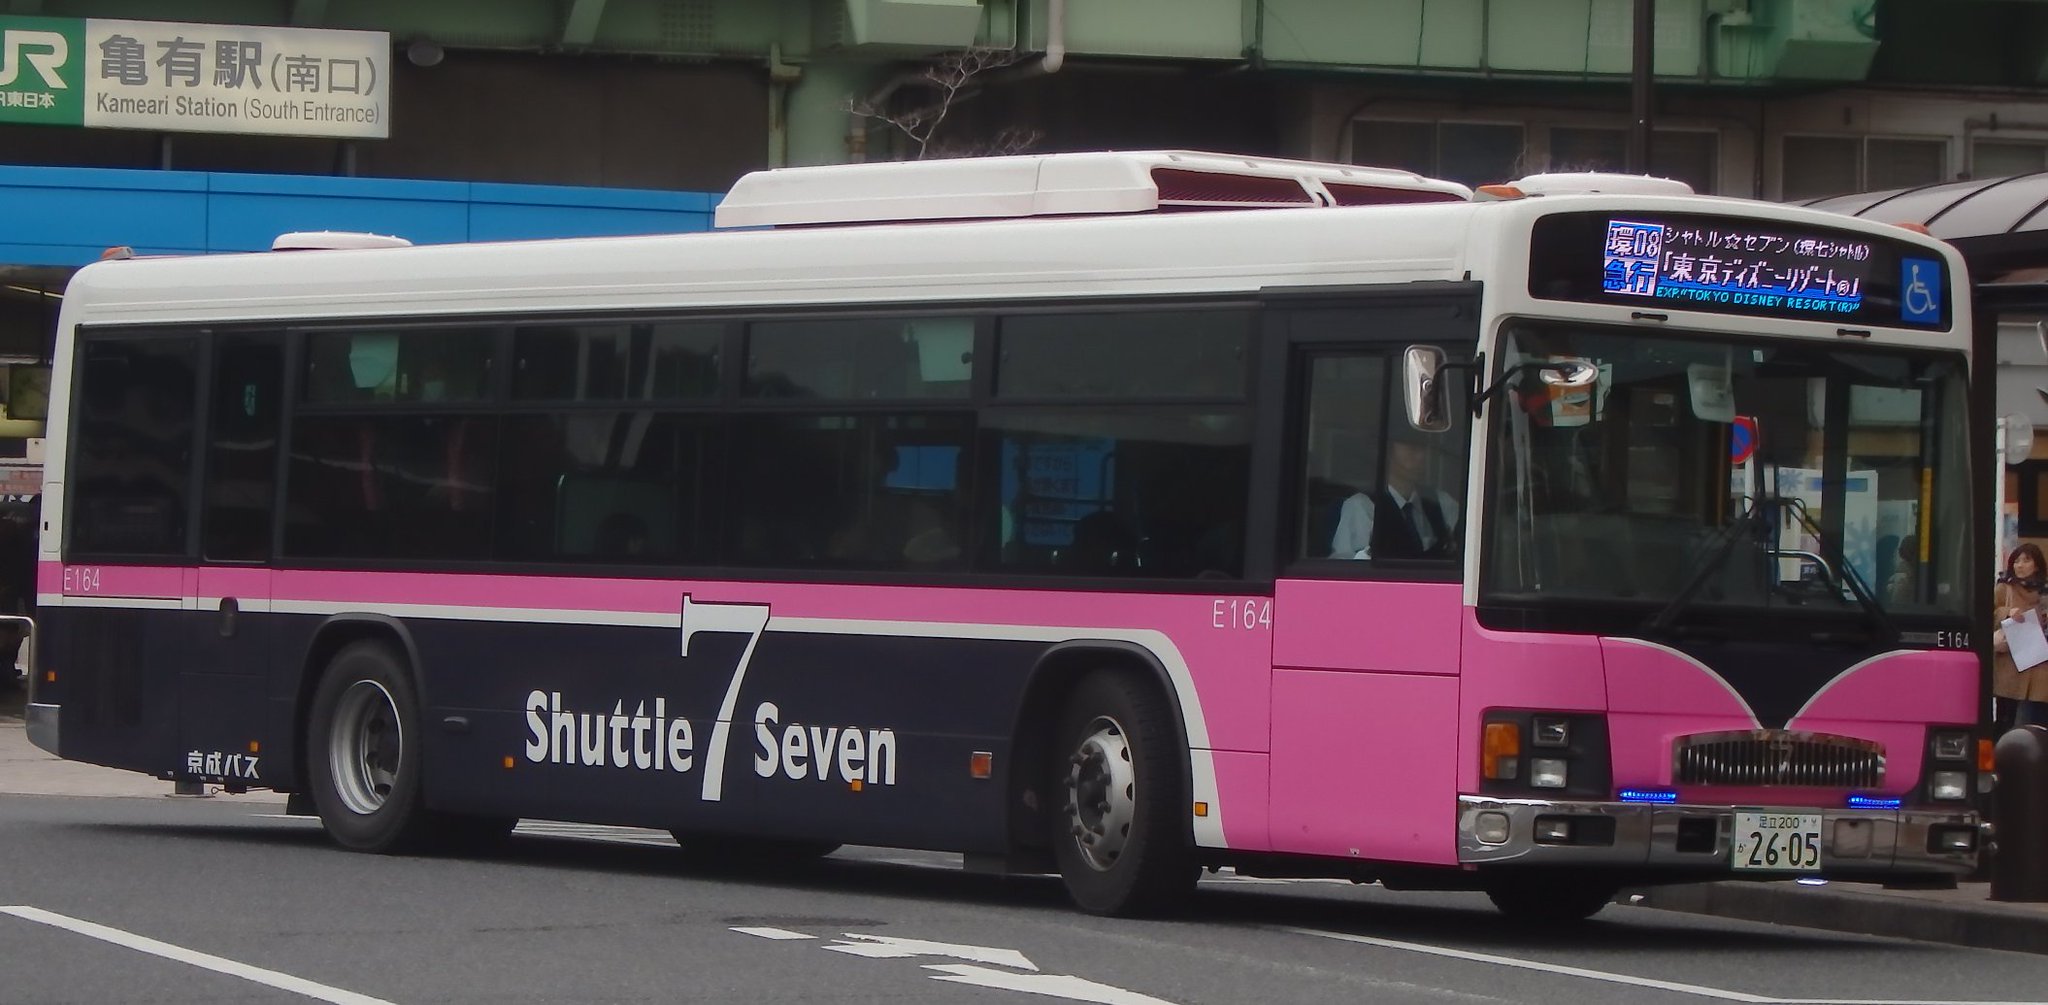 常磐急行 京成バス シャトルセブン 亀有駅 ディズニーリゾート間を京成バスが運行している急行バス シャトルセブン 一部は新小岩発 運行初期から使われていたエルガe164号 更新後にハイブリッド車へ が 新小岩発の特急へ